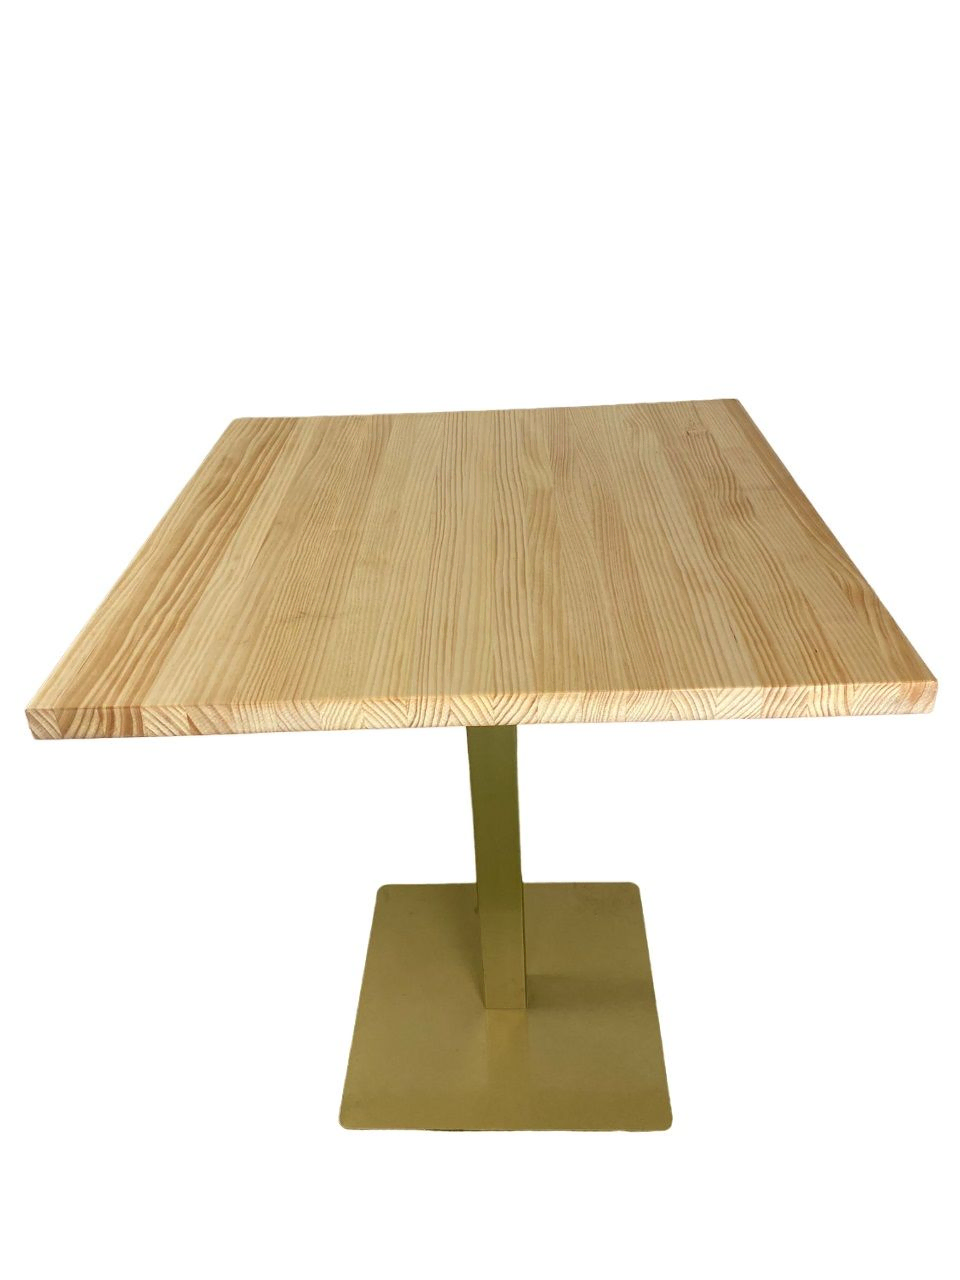 Mesa de madera natural con barniz incoloro 